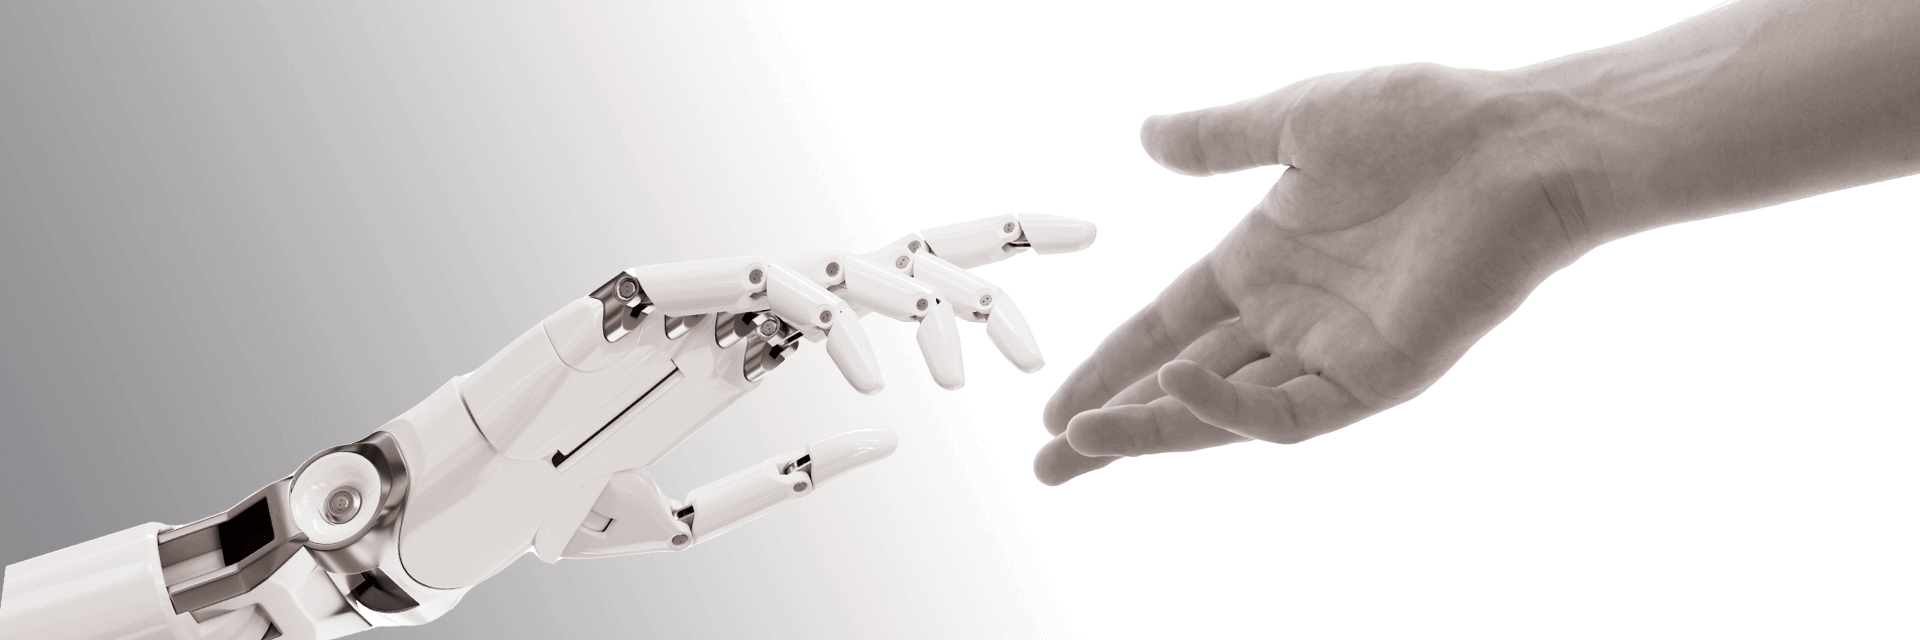 机器人的手和人类的手互相伸向对方